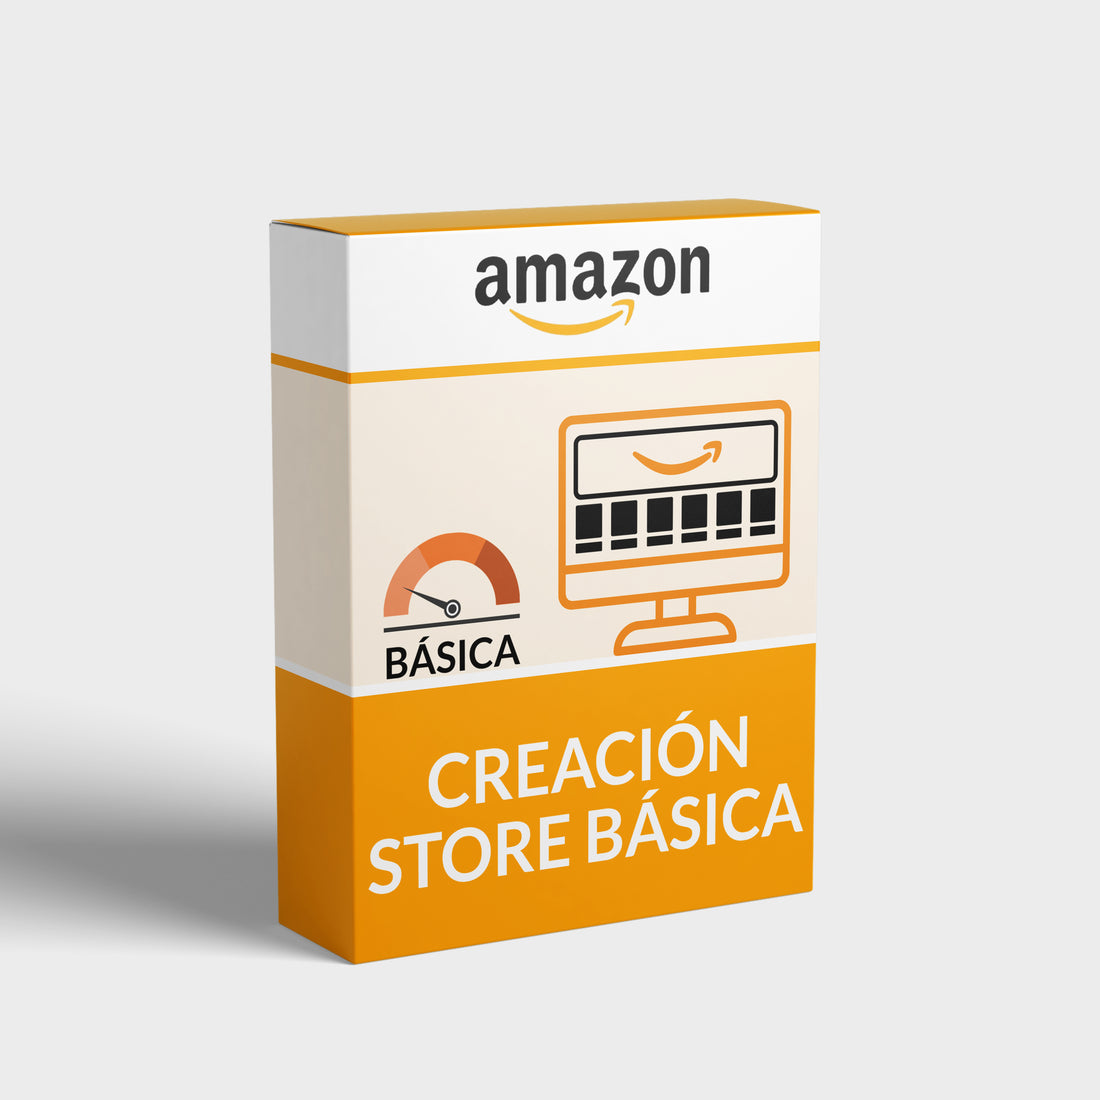 Creación store (tienda) básica Amazon